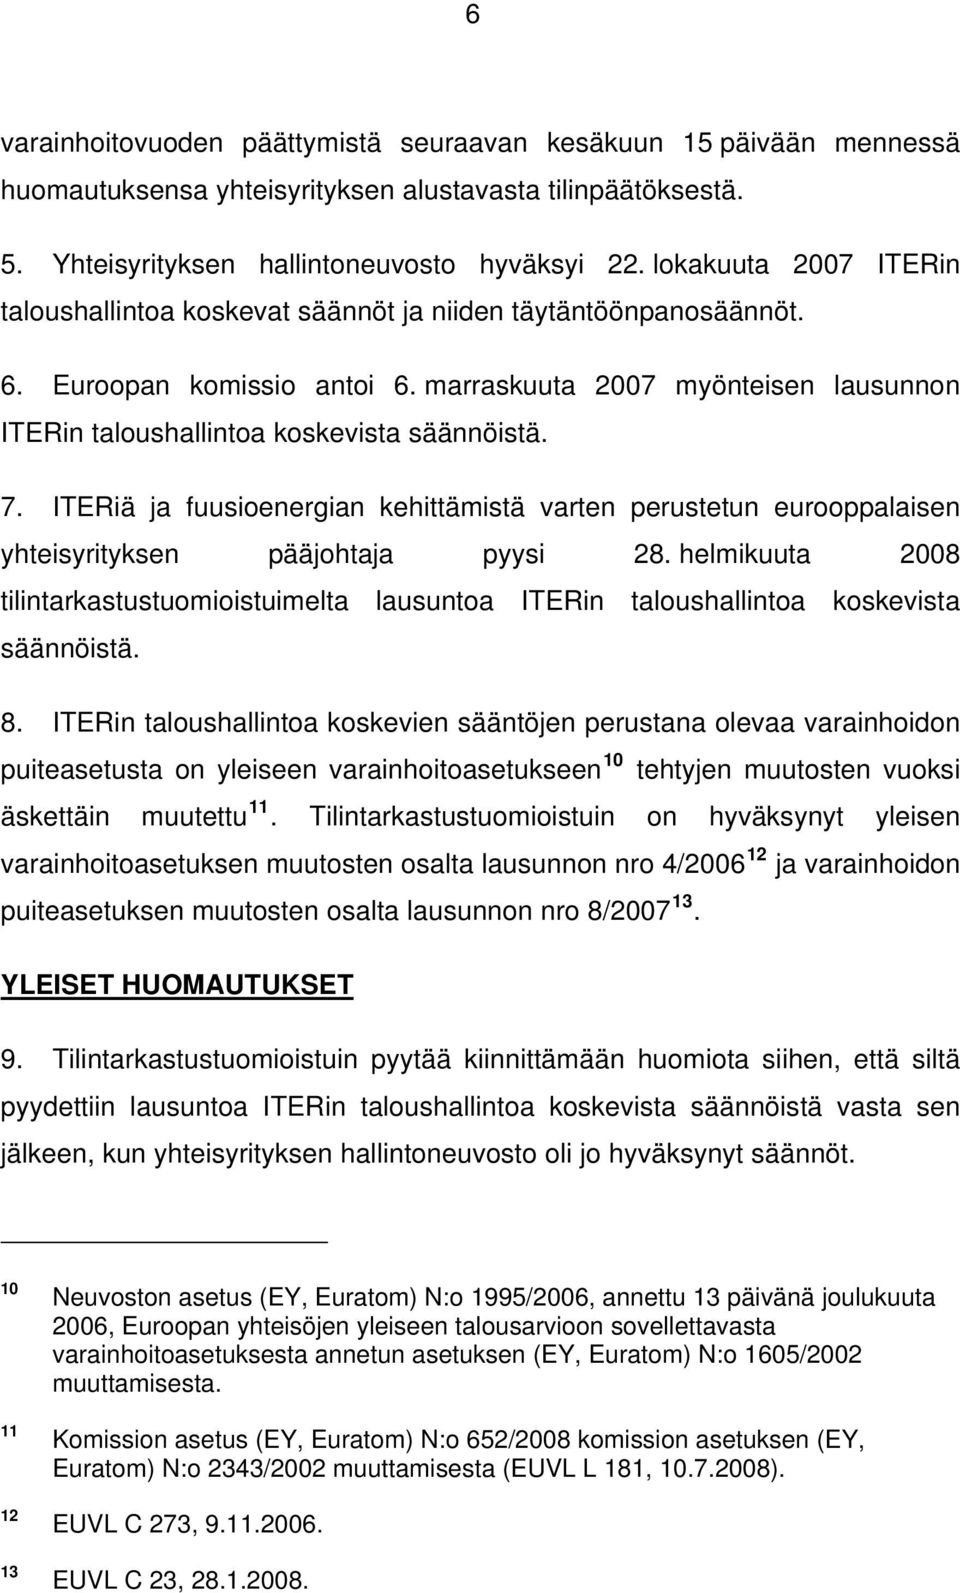 marraskuuta 2007 myönteisen lausunnon ITERin taloushallintoa koskevista säännöistä. 7. ITERiä ja fuusioenergian kehittämistä varten perustetun eurooppalaisen yhteisyrityksen pääjohtaja pyysi 28.